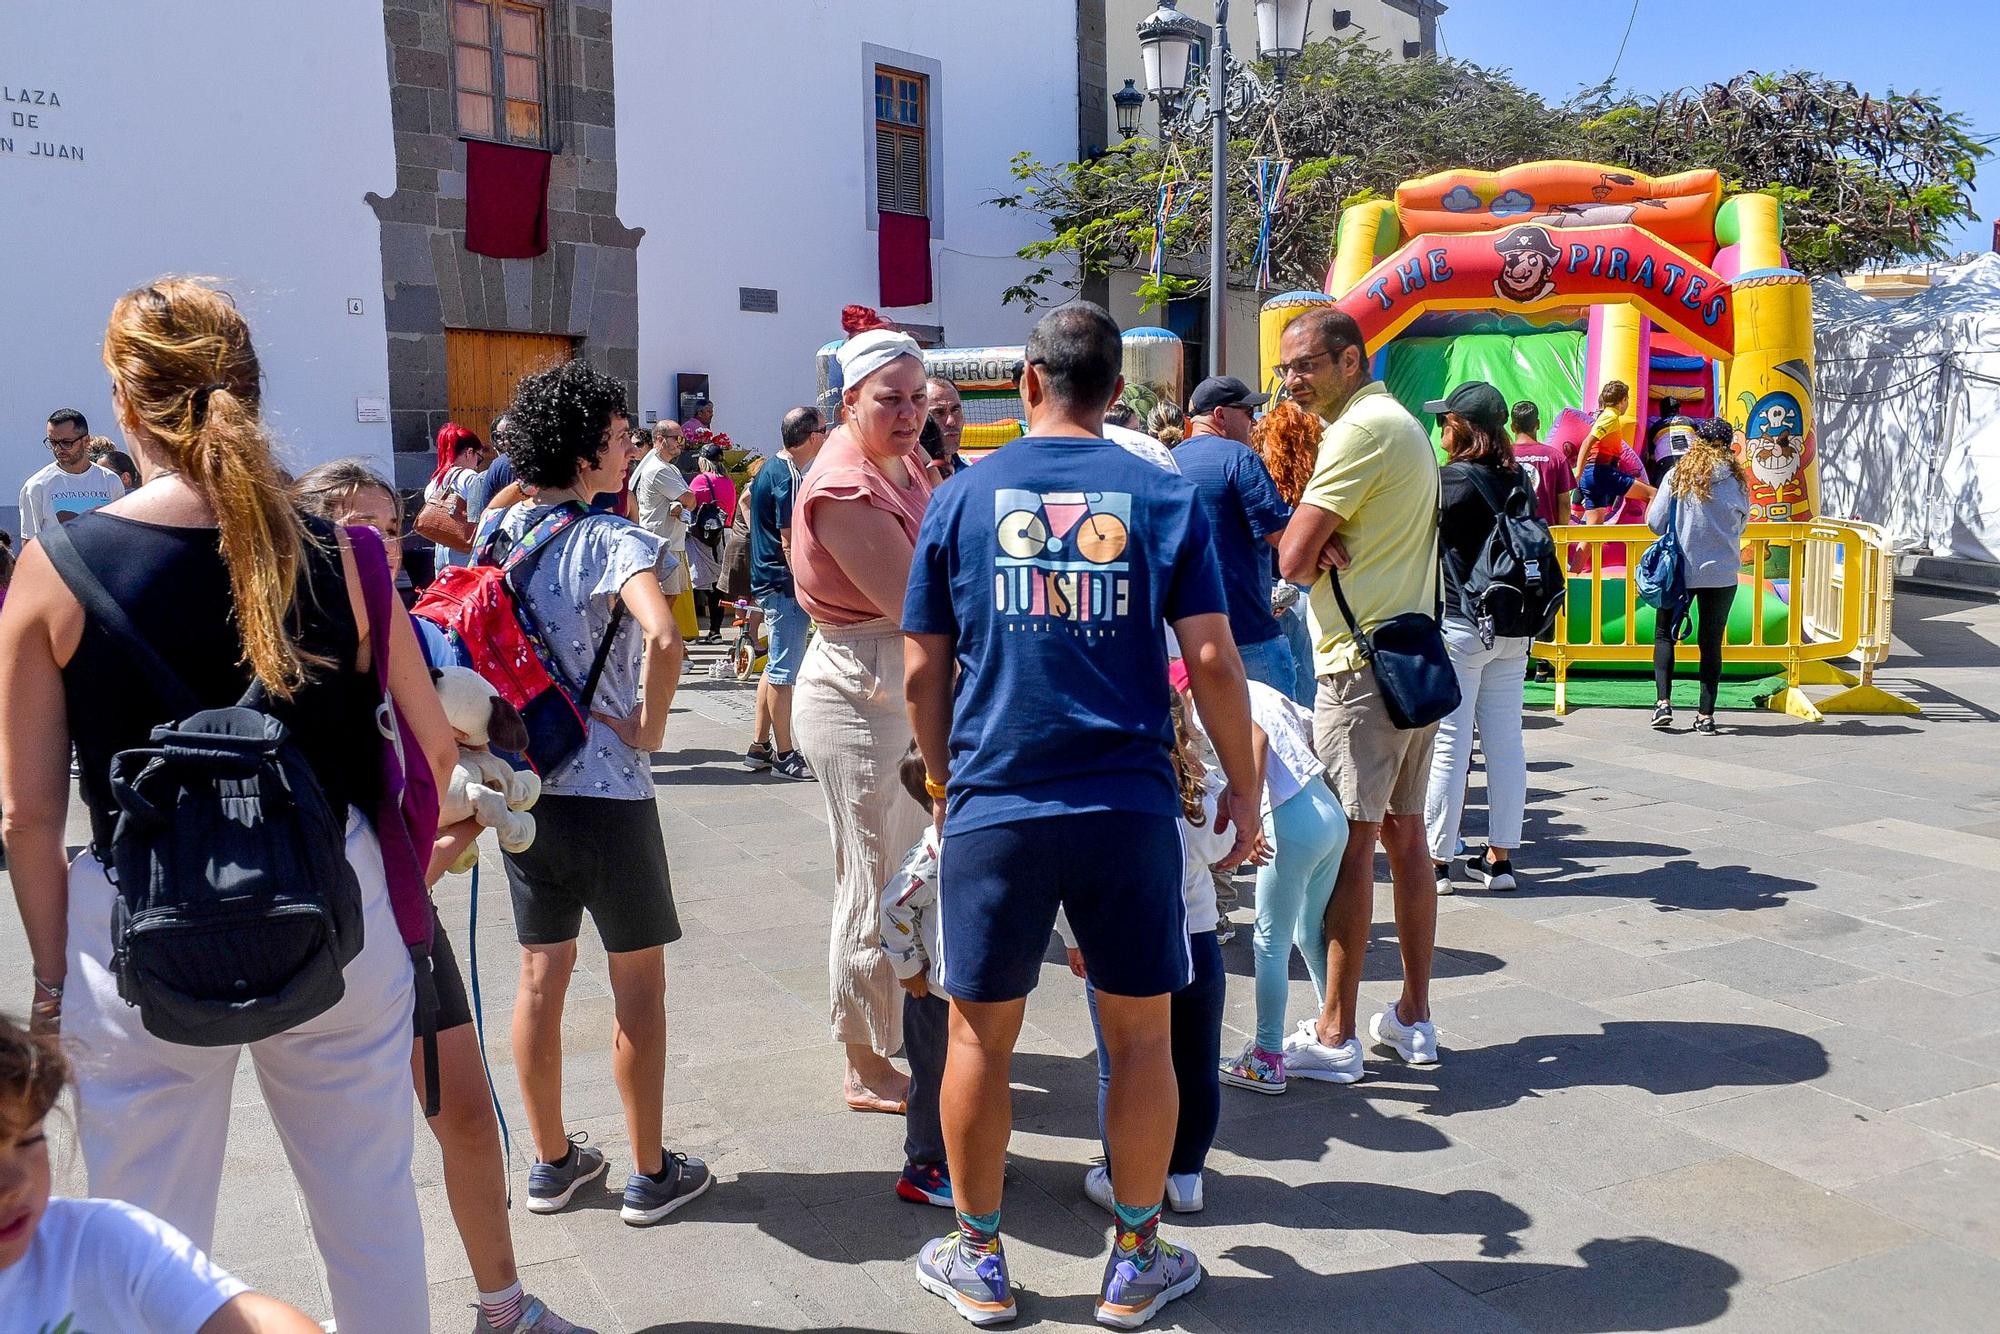 Deportes y actividades en el barrio de San Juan, en Telde.